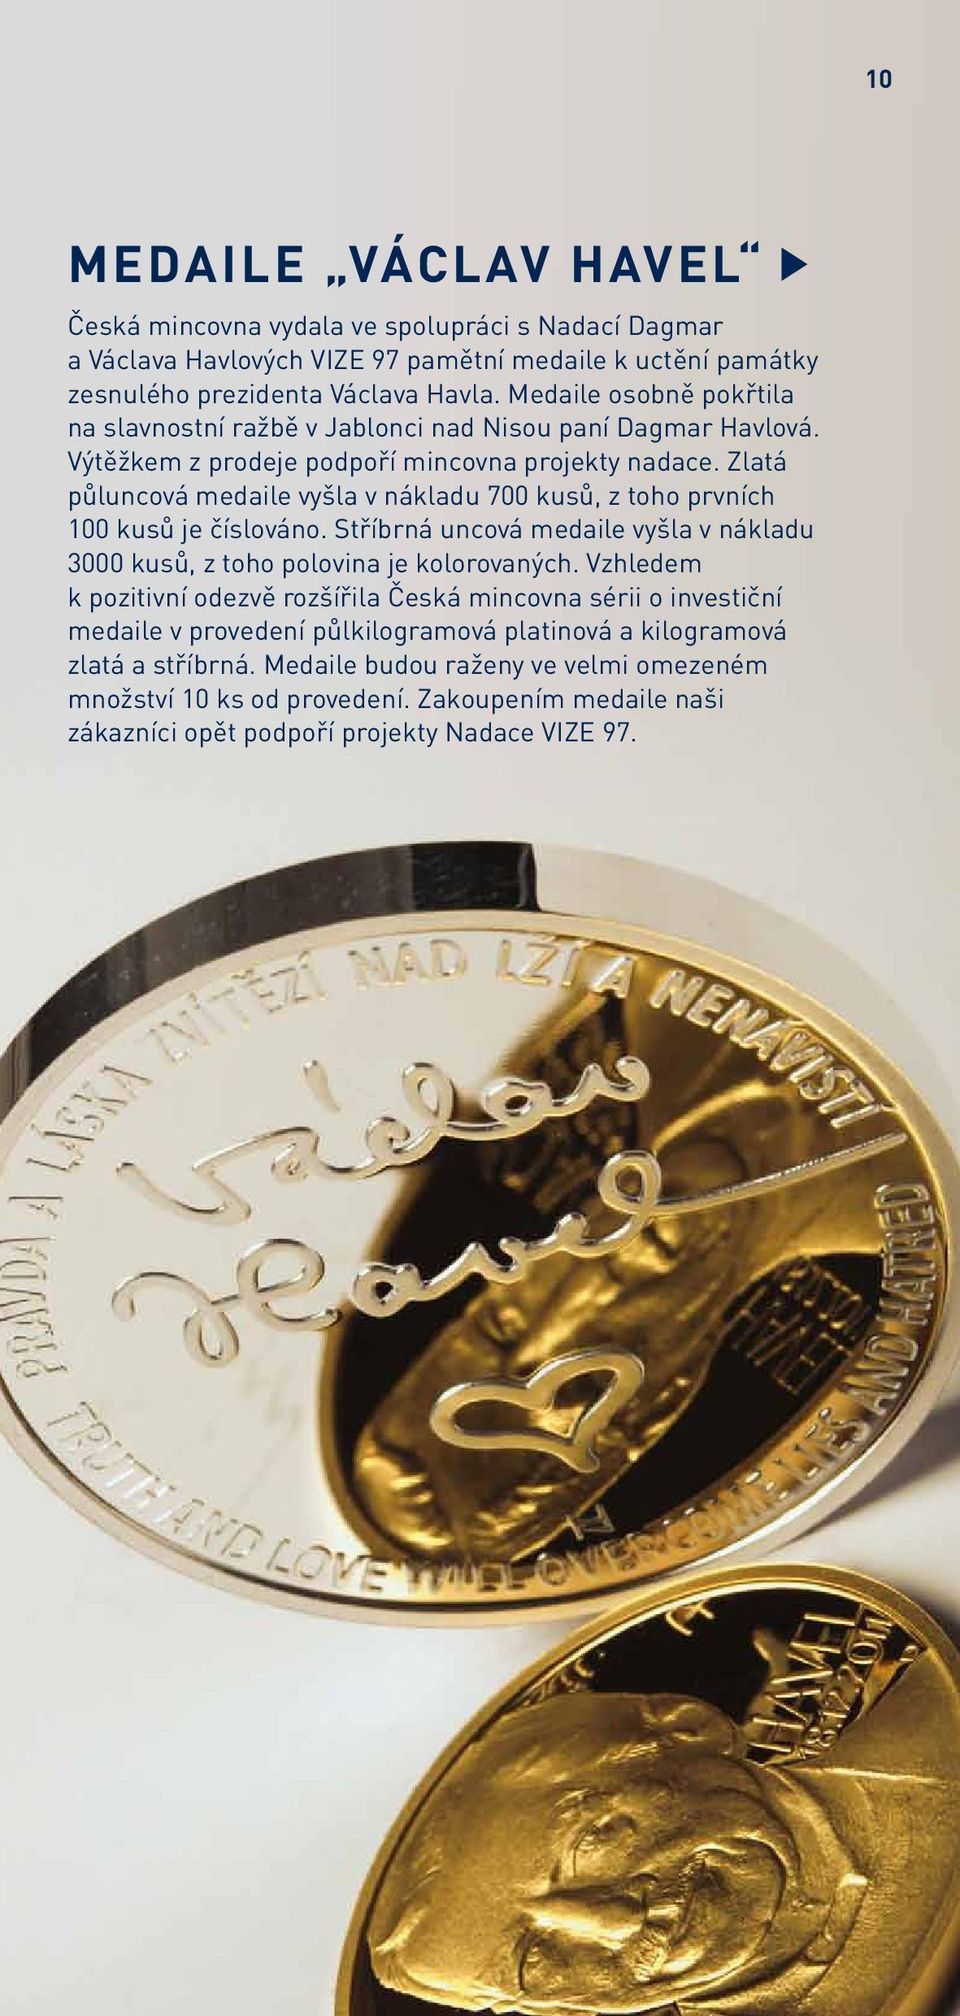 Zlatá půluncová medaile vyšla v nákladu 700 kusů, z toho prvních 100 kusů je číslováno. Stříbrná uncová medaile vyšla v nákladu 3000 kusů, z toho polovina je kolorovaných.